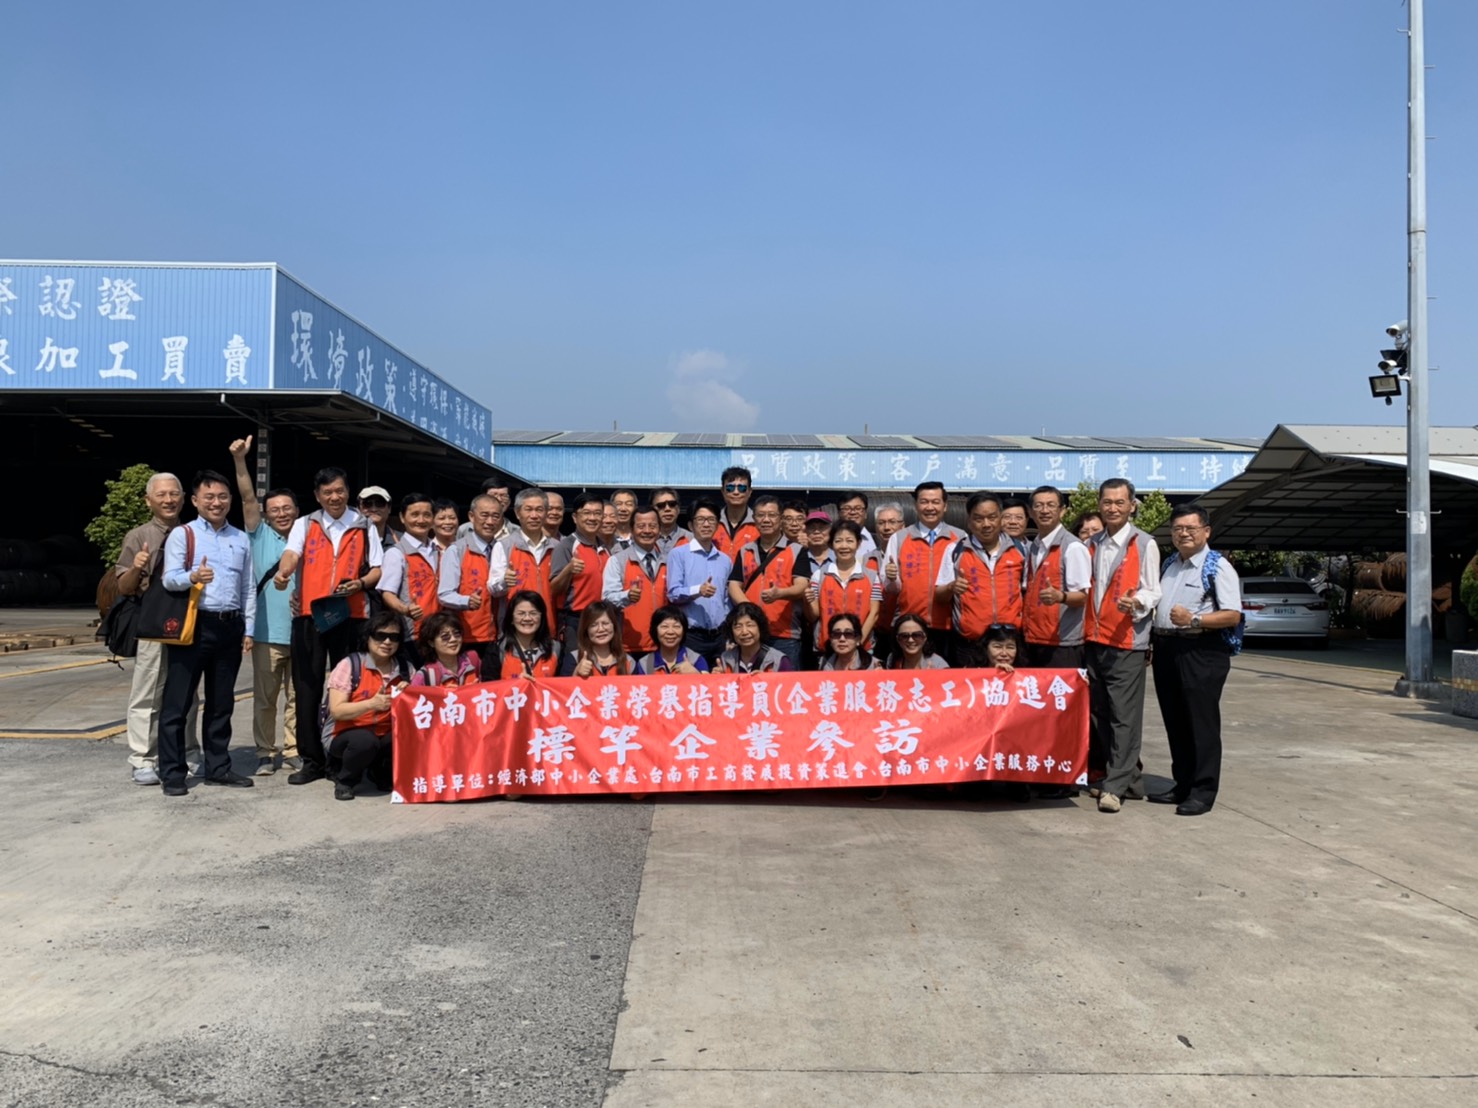 「台南市中小企業榮譽指導員協進會」蒞臨參觀